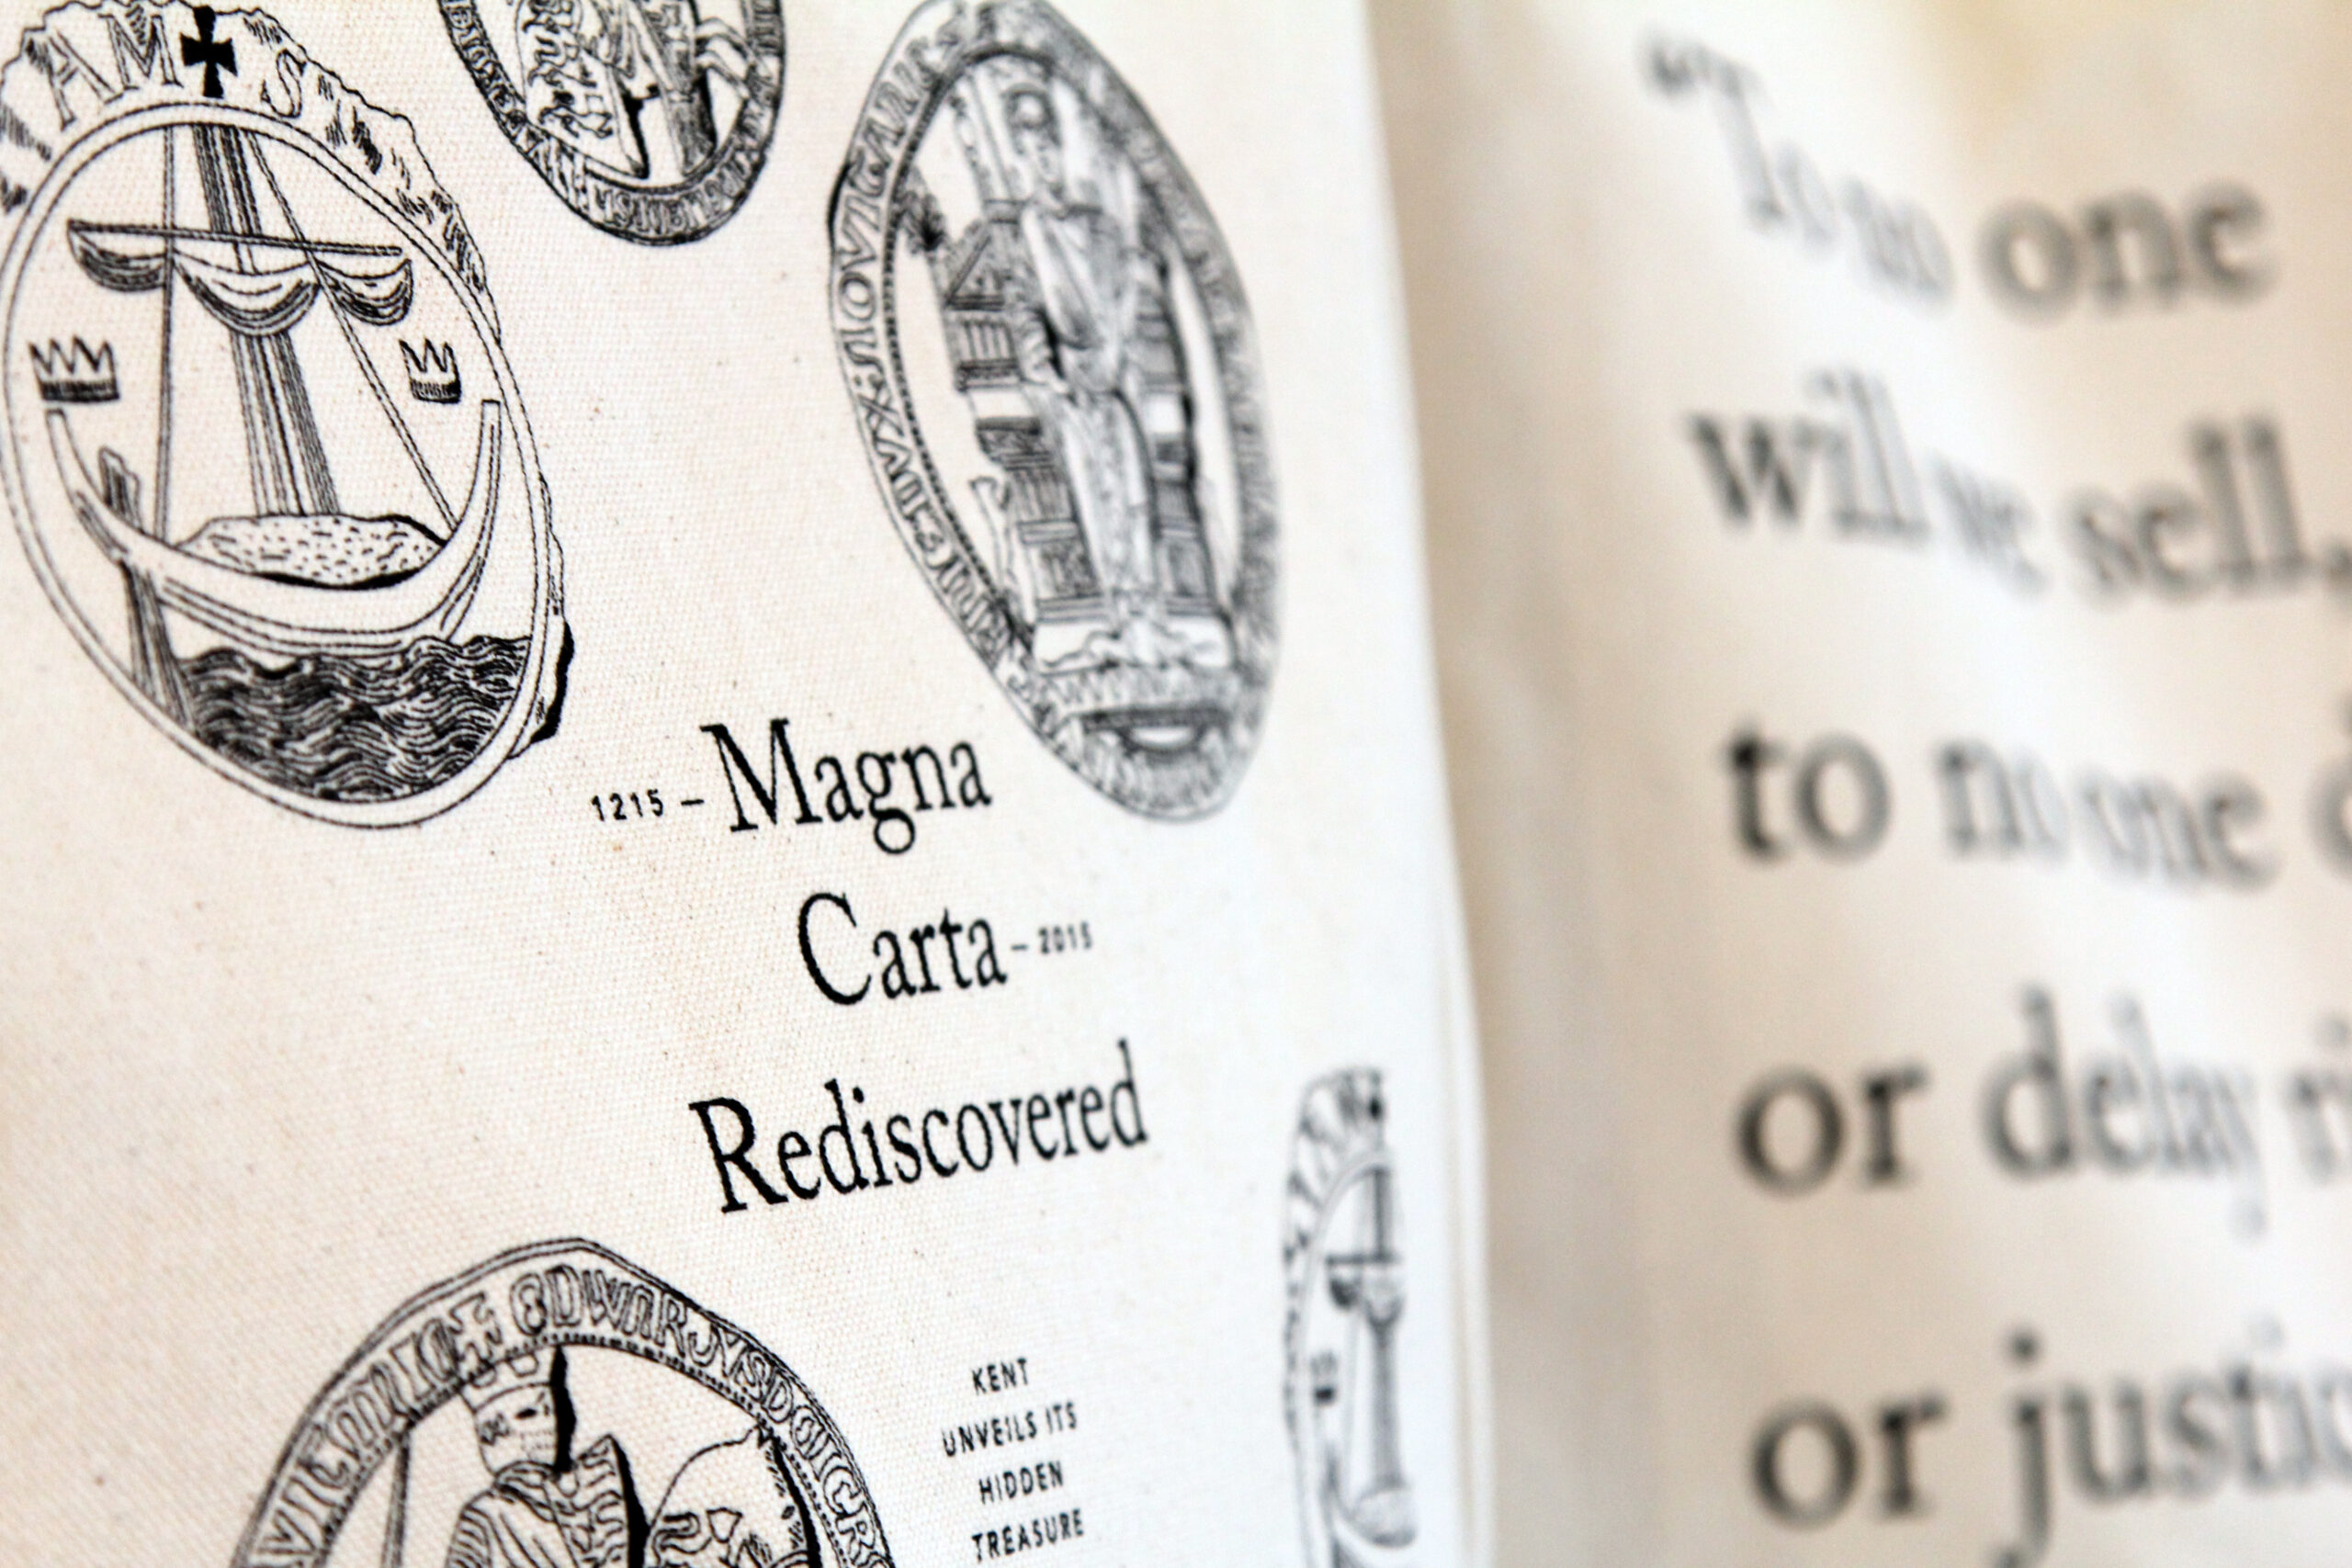 tessuto dell'esposizione Magna Carta con stampata grafica dedicata al progetto